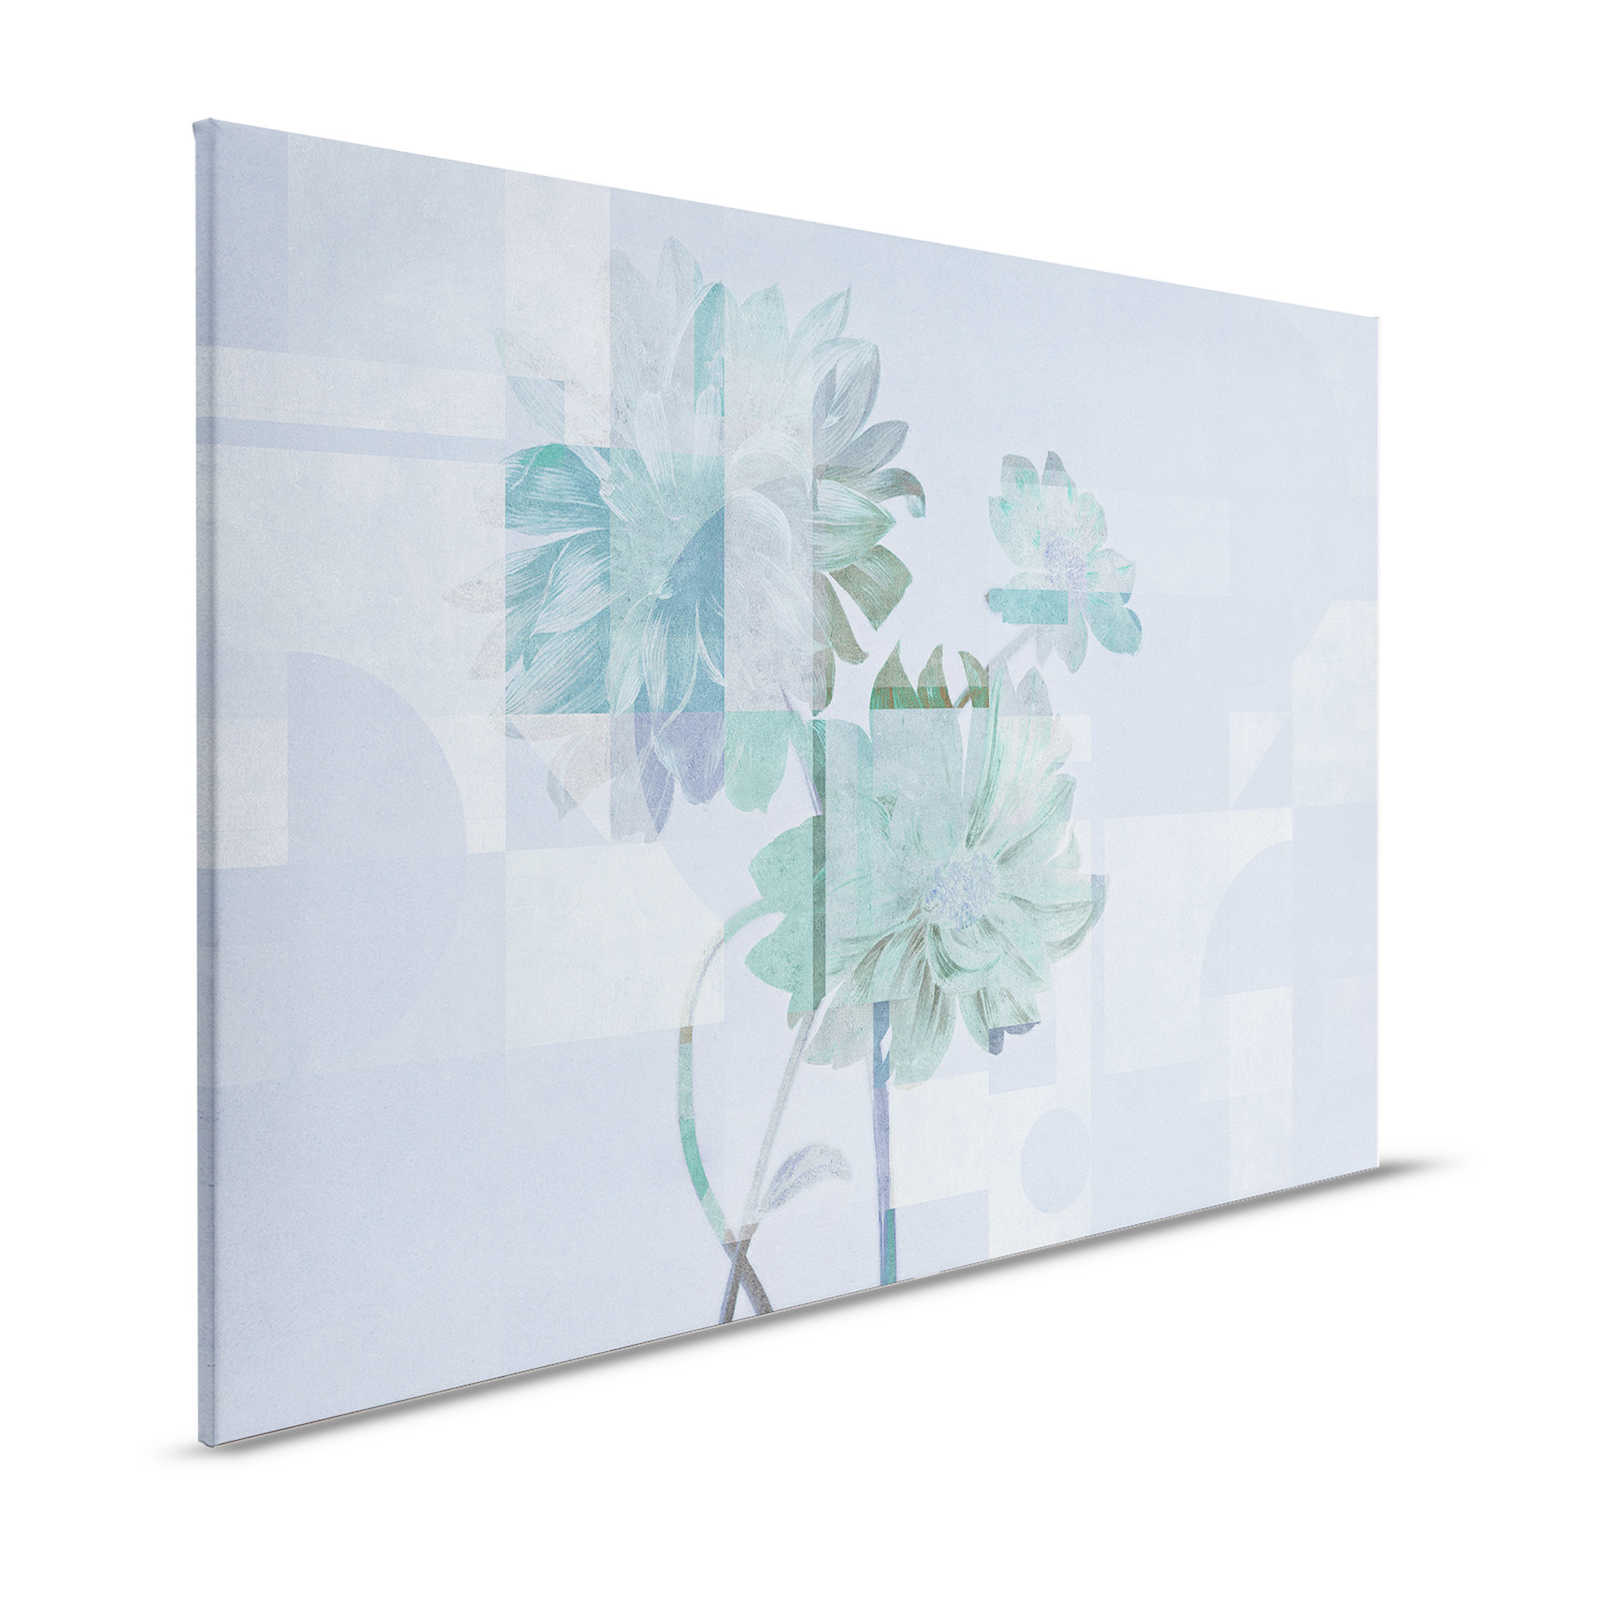 Queens Garden 1 - Bloemrijk Canvas schilderij blauwe margrieten & grafisch patroon - 1.20 m x 0.80 m
